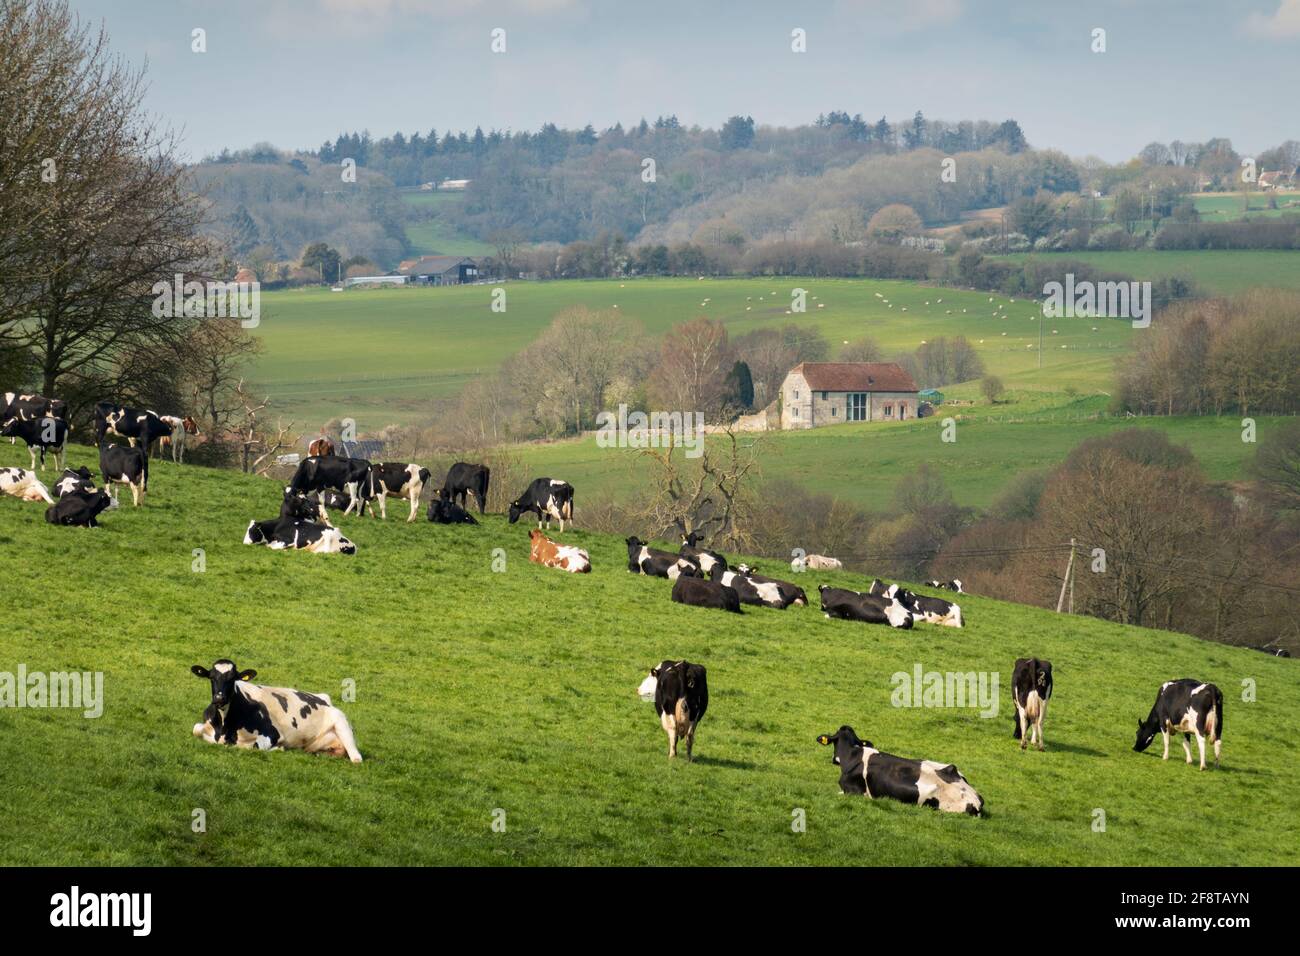 Vaches dans le champ avec paysage de printemps vue de la voie publique dans le Cranborne Chase AONB, Tisbury, Wiltshire, Angleterre, Royaume-Uni, Europe Banque D'Images